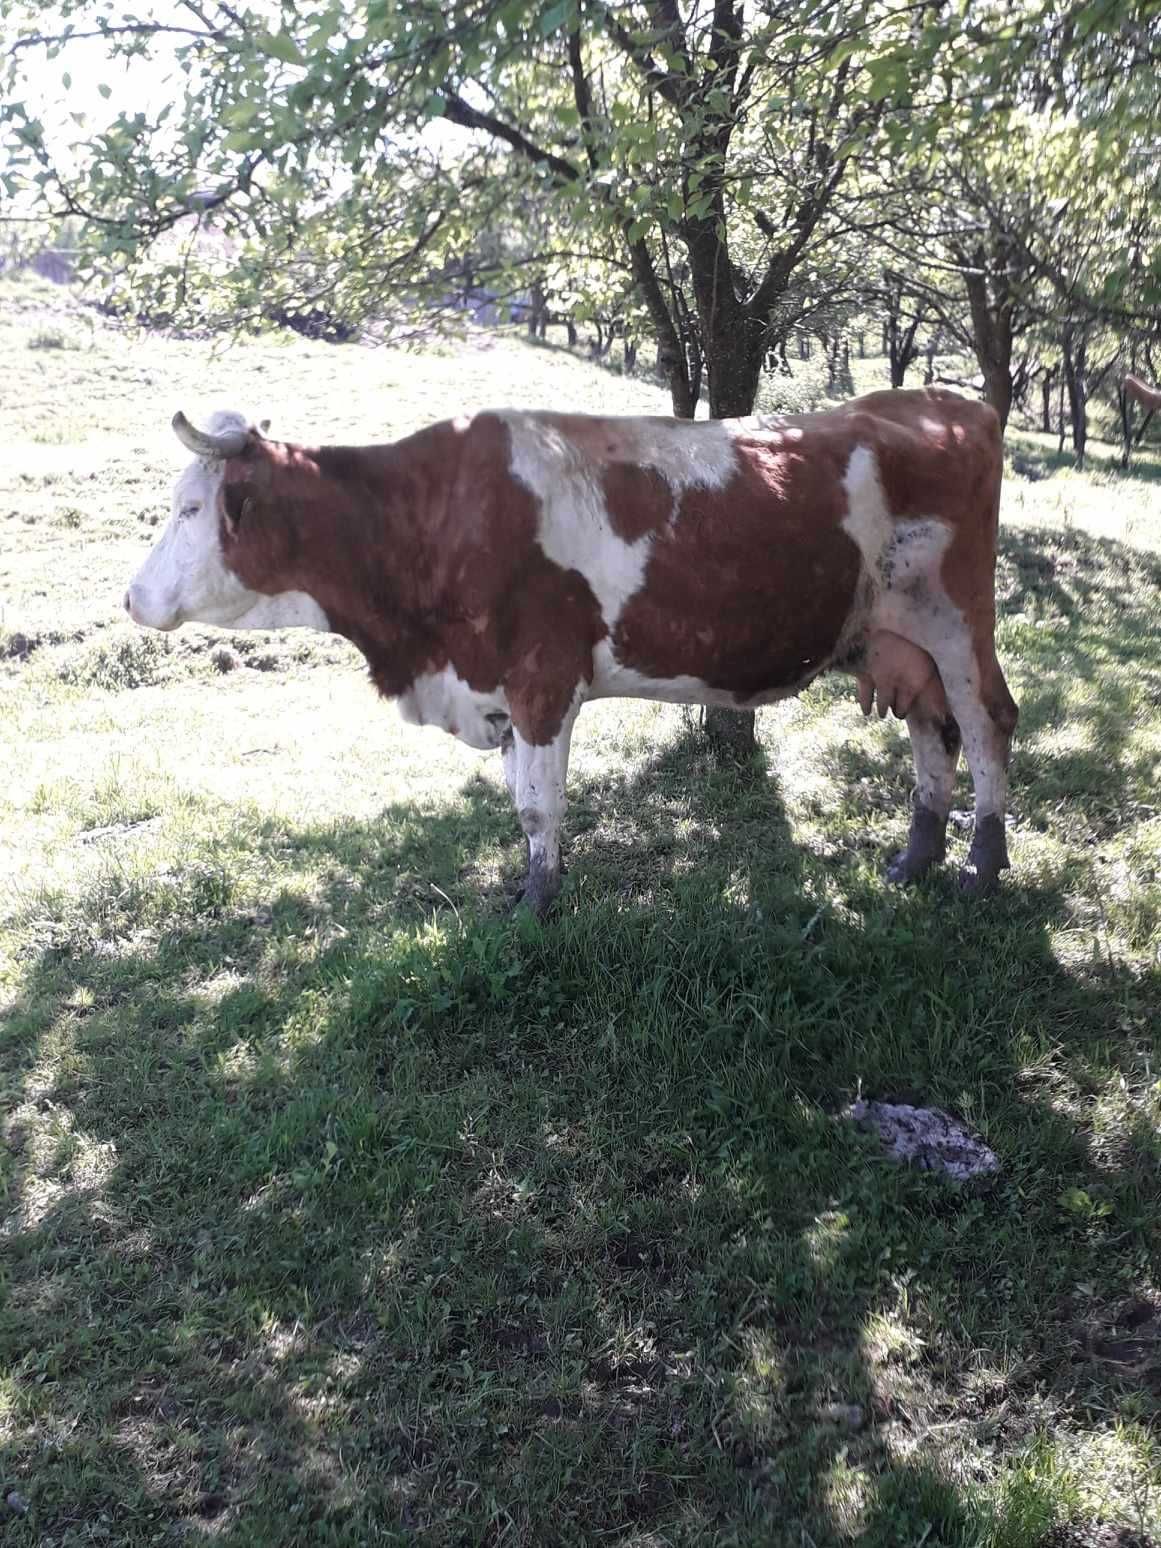 Vaca baltată romaneasca